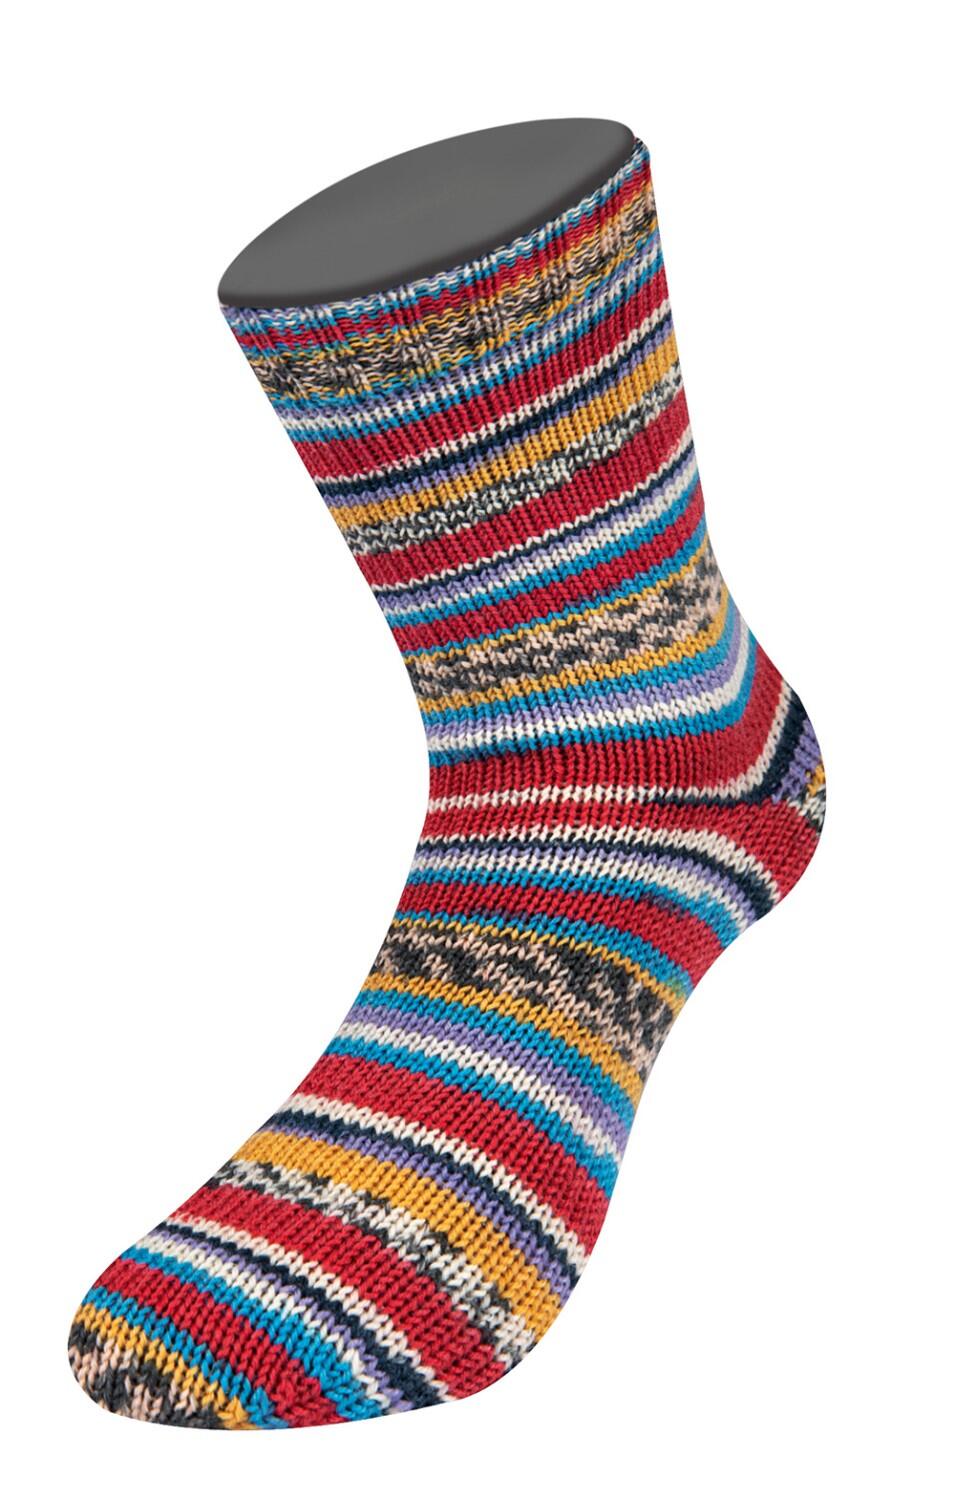 Lana Grossa Landlust Sockenwolle  "Bunte Bänder "  Farbe: 701